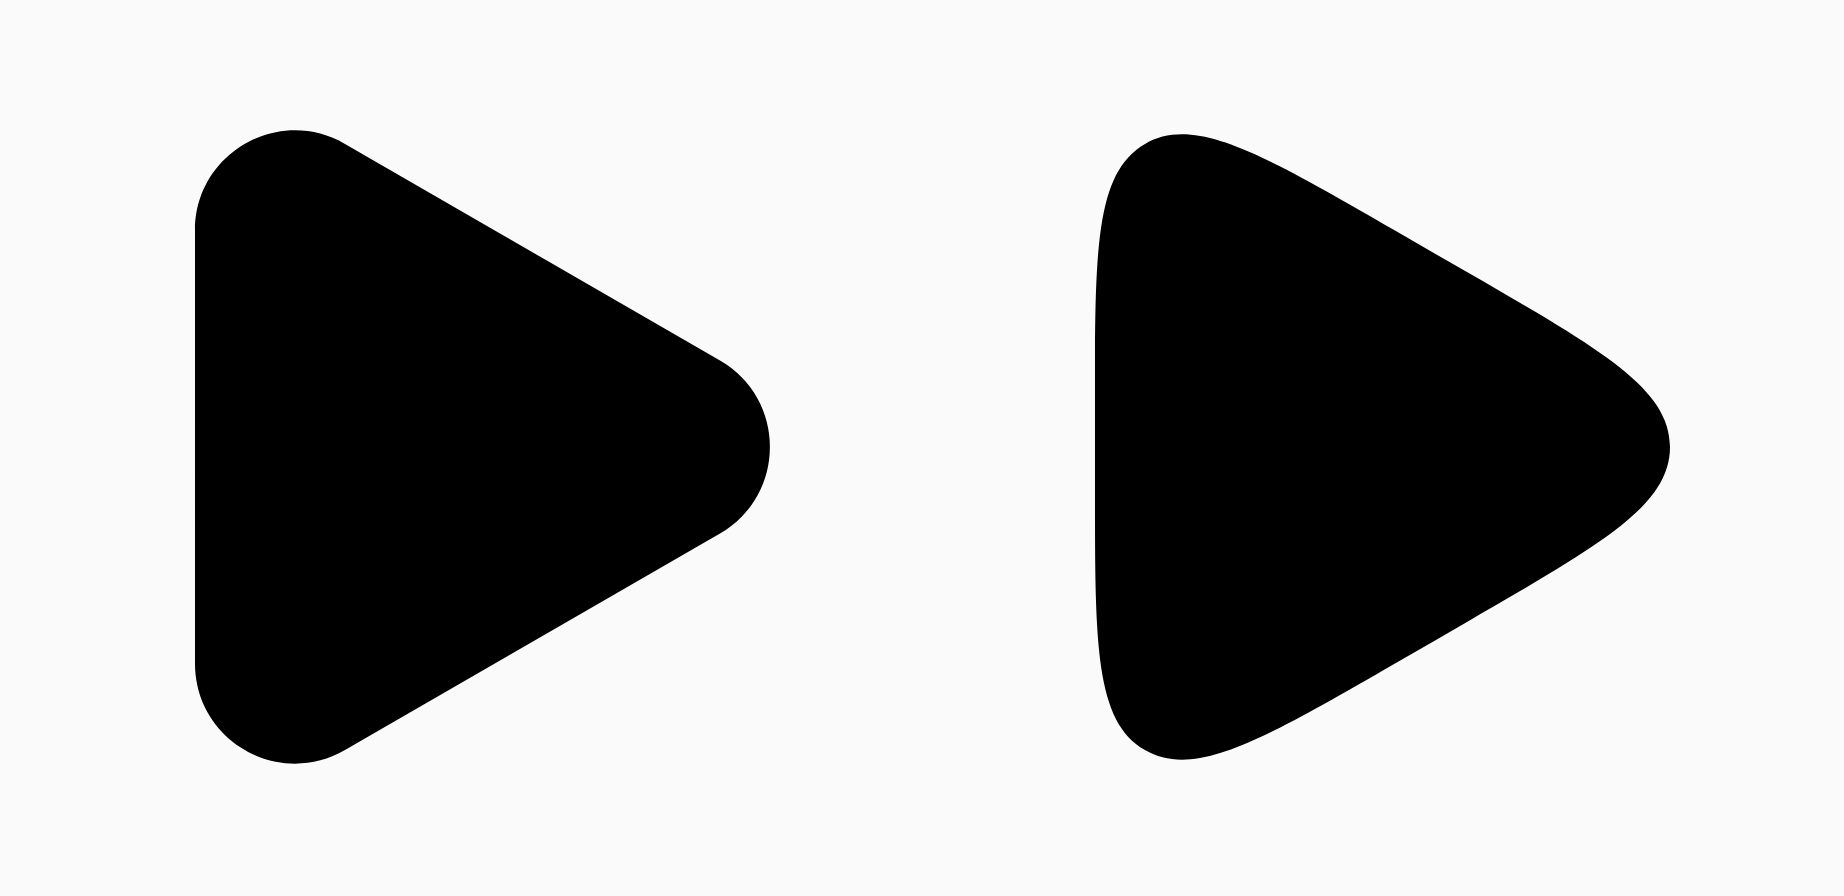 Deux triangles noirs montrant la différence de paramètre de lissage.